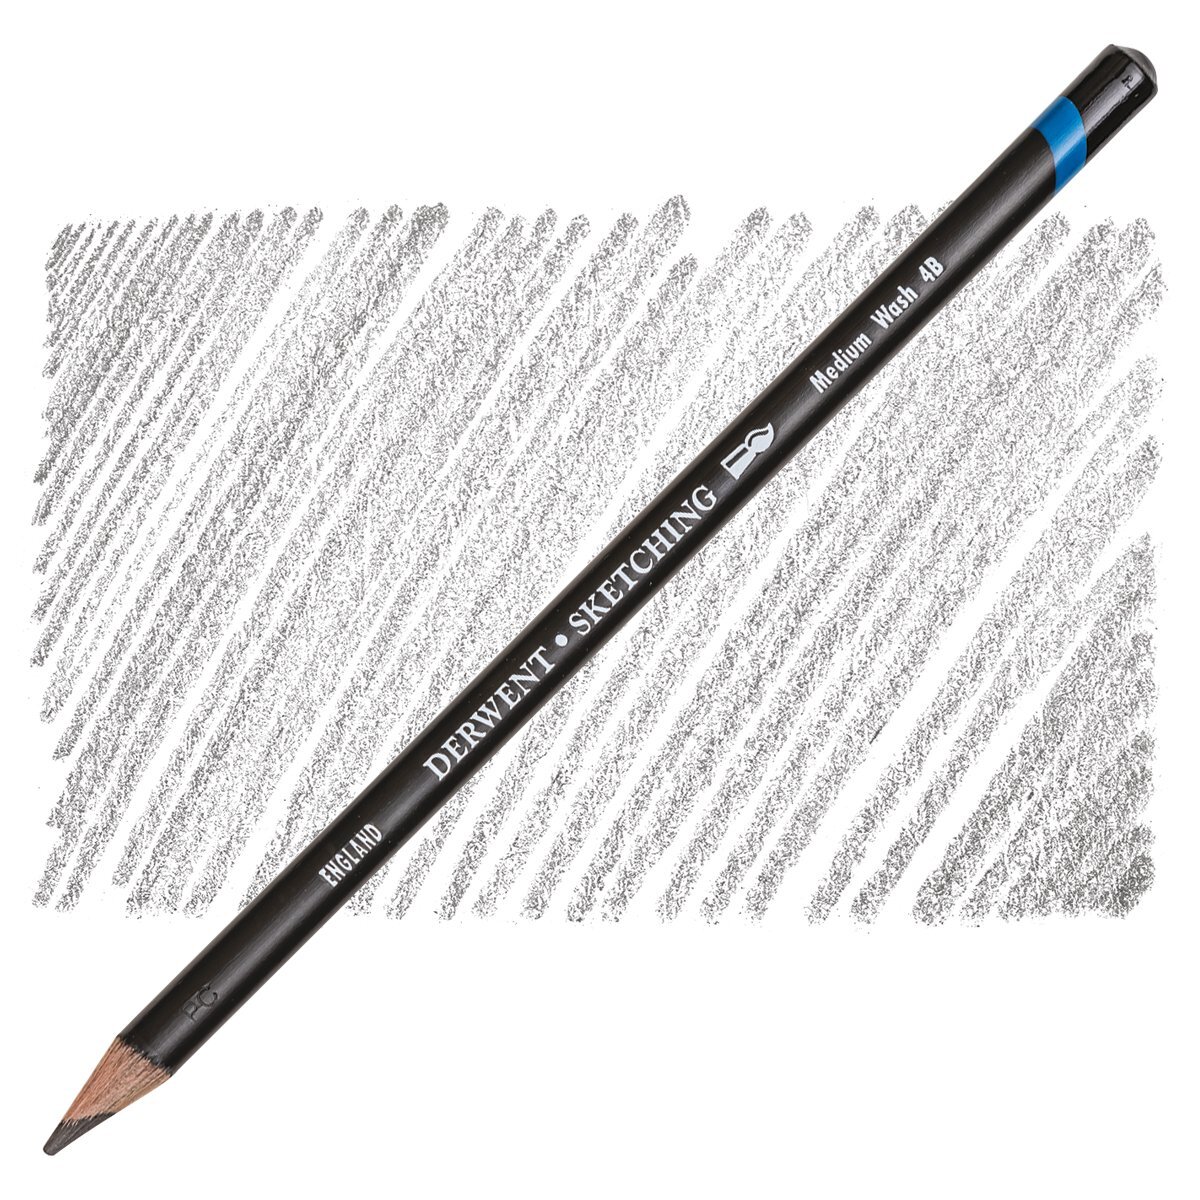 Derwent Graphic Line & Wash Sketch Pencil Set, 14 Piece